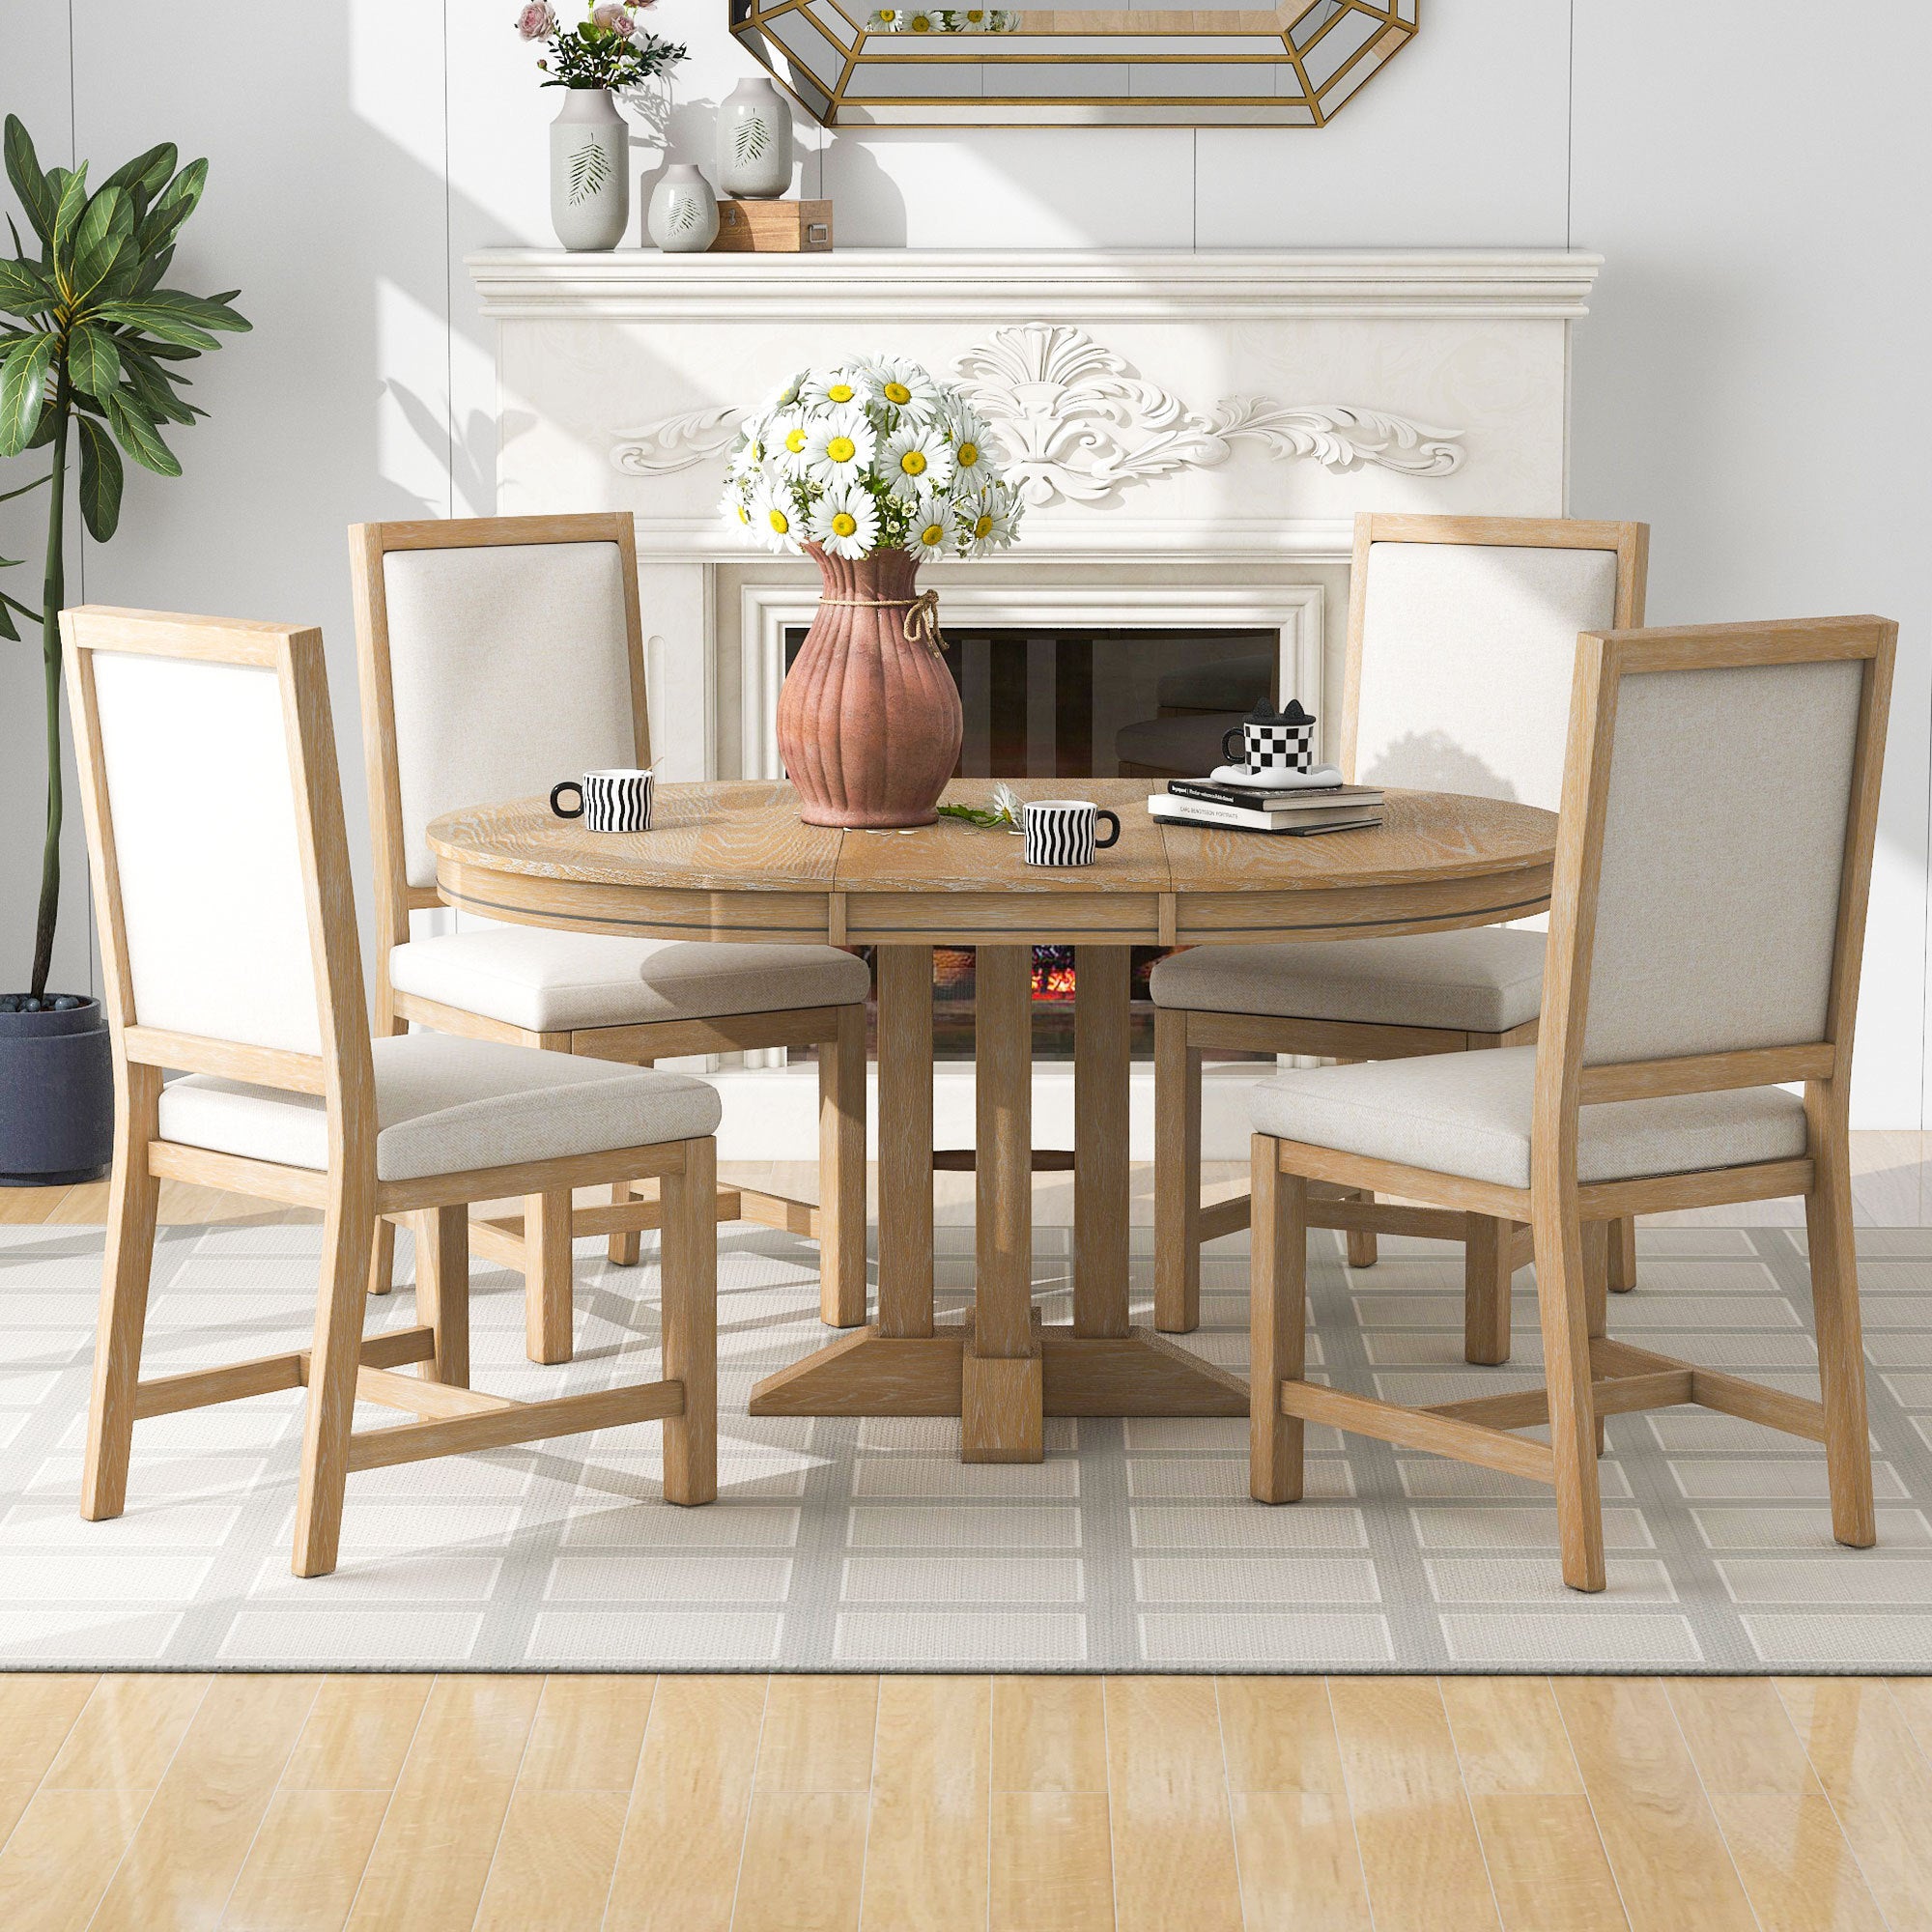 TREXM Mesa redonda extensible y 4 sillas tapizadas Juego de muebles de cocina y comedor de 5 piezas (lavado de madera natural)